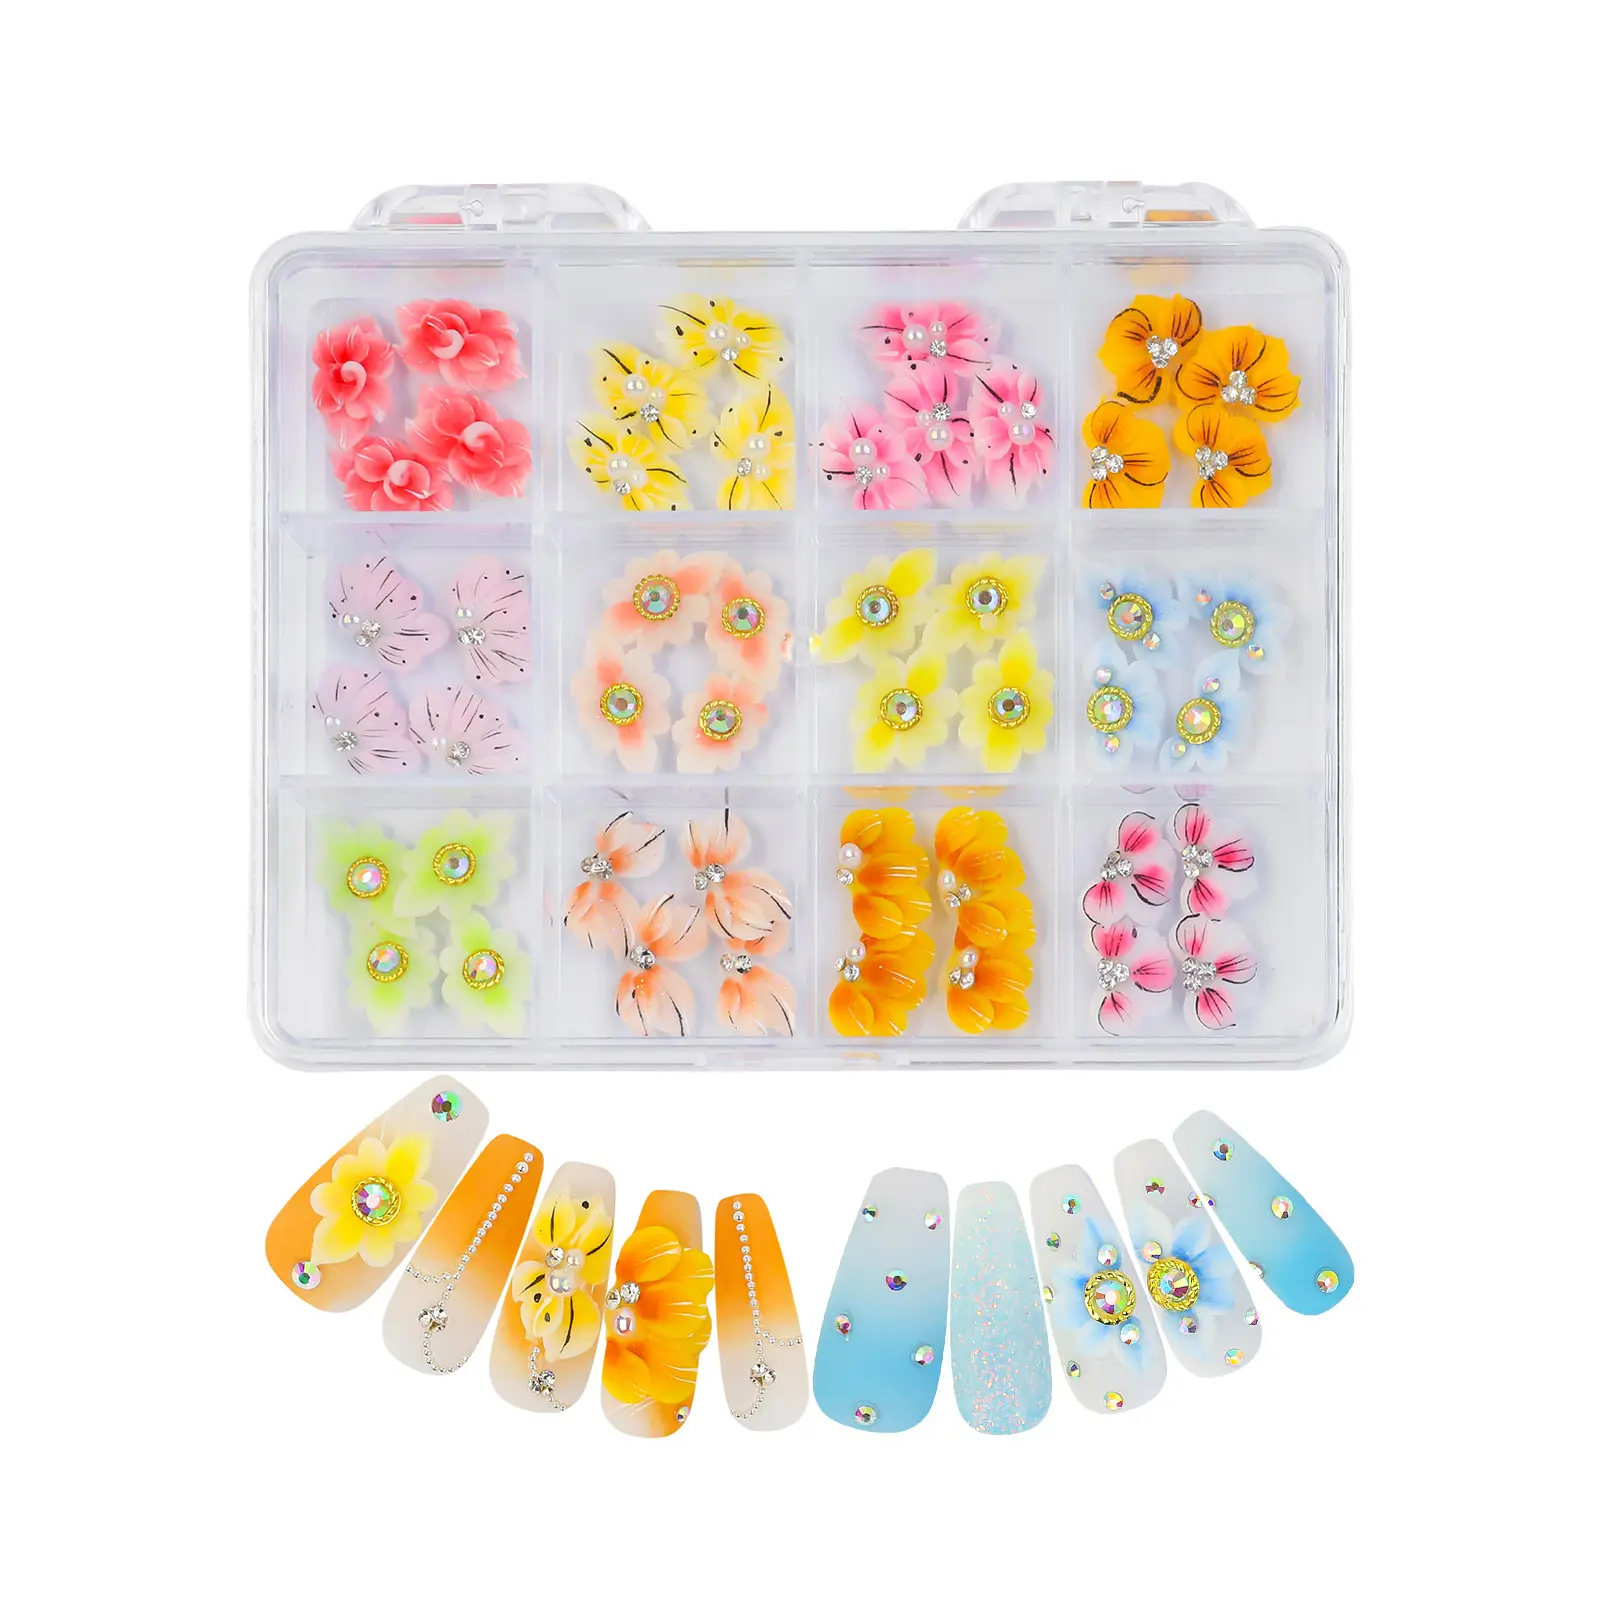 48 unids/caja de accesorios para uñas hechos a mano Kawaii Nail Art Charms decoración pegatinas 3D acrílico flores